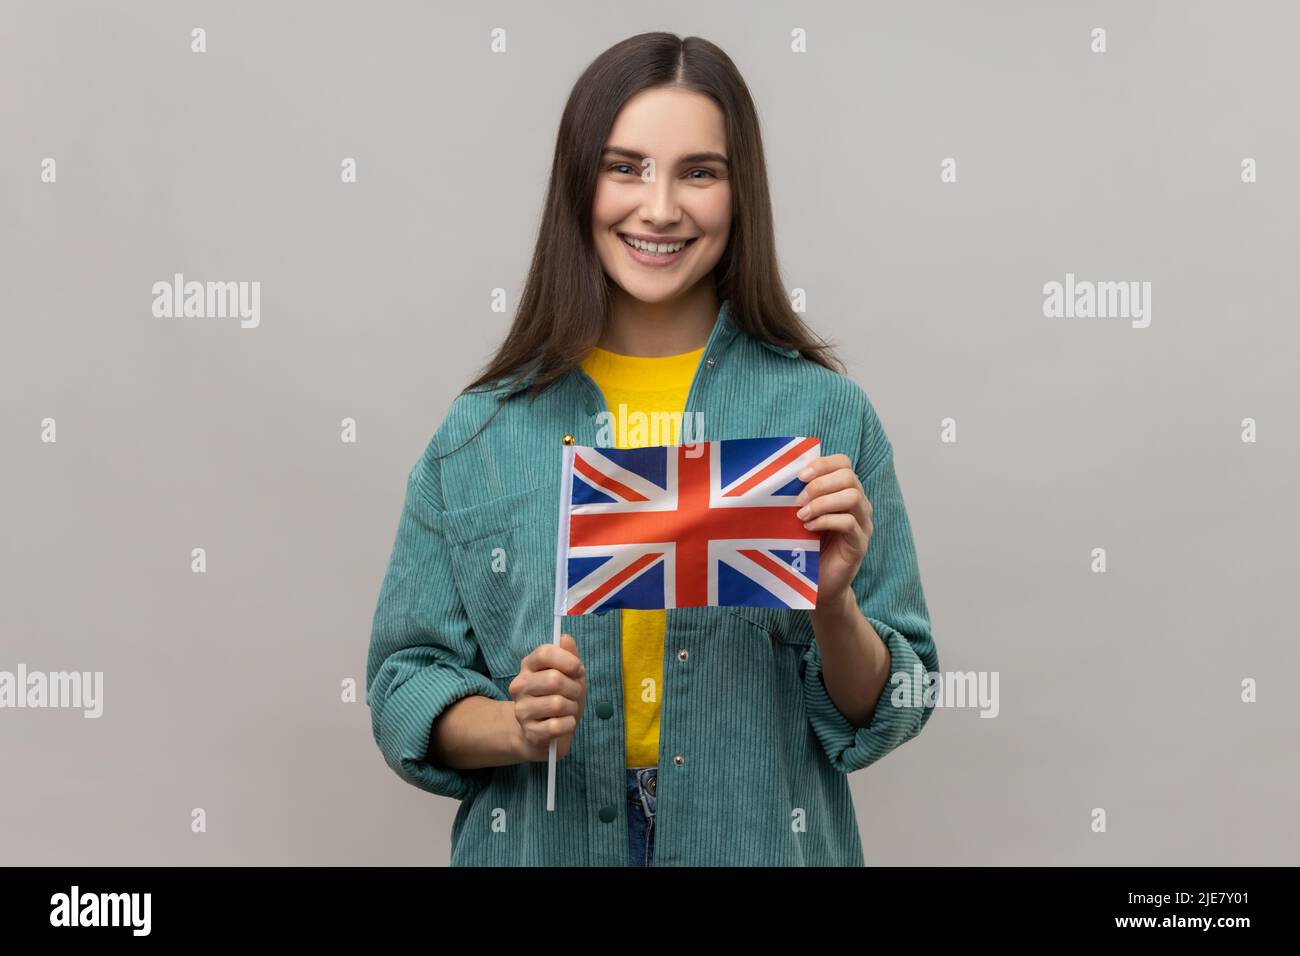 Portrait d'une femme ravie tenant le drapeau britannique, regardant l'appareil photo avec un sourire crasseux, patriote, portant une veste de style décontracté. Prise de vue en studio isolée sur fond gris. Banque D'Images